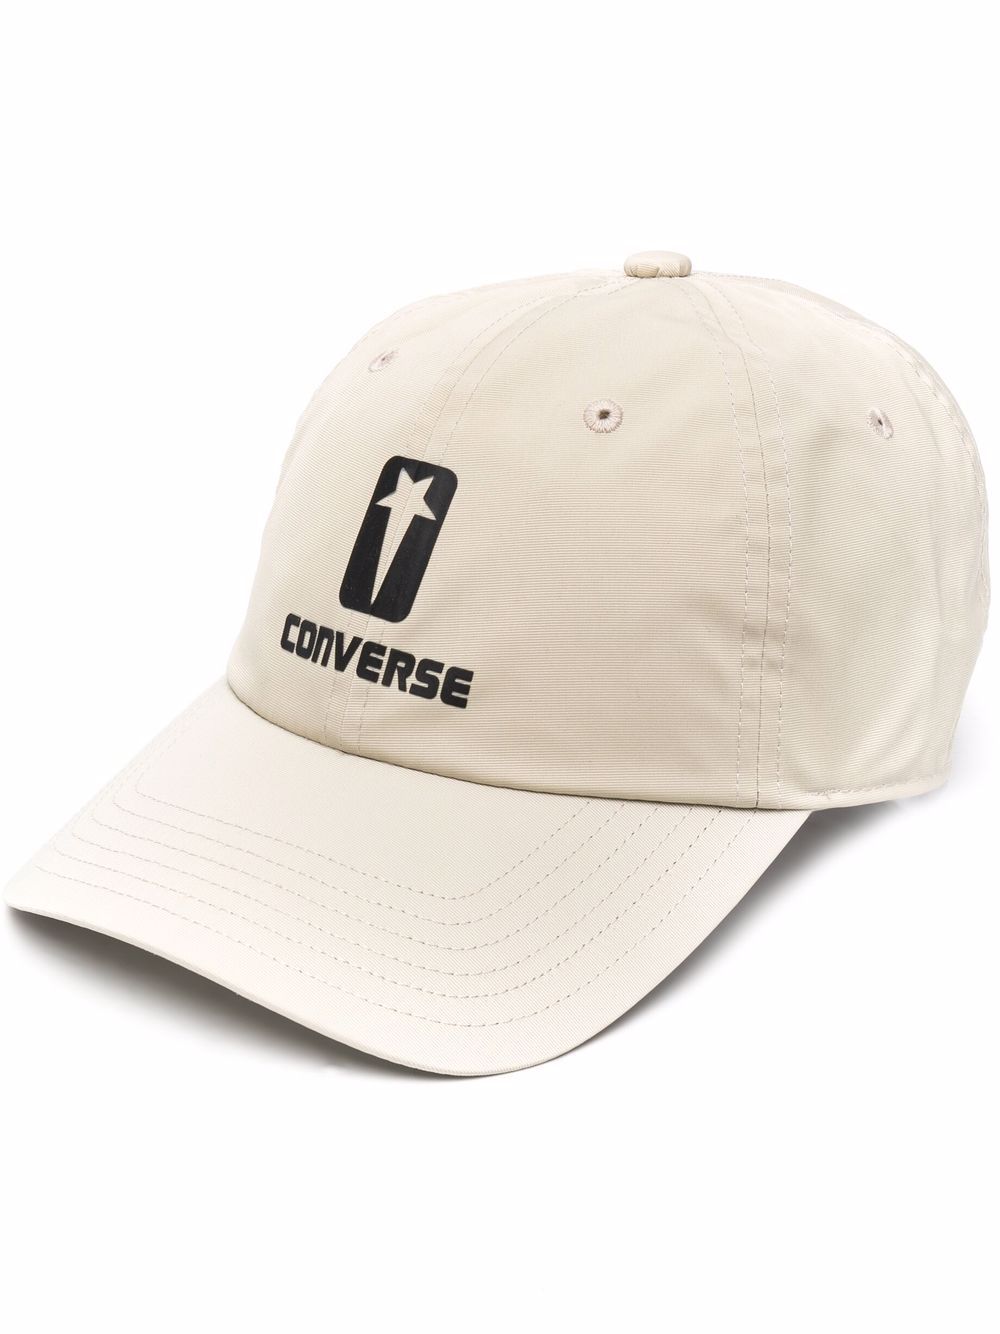 фото Converse бейсболка с вышитым логотипом